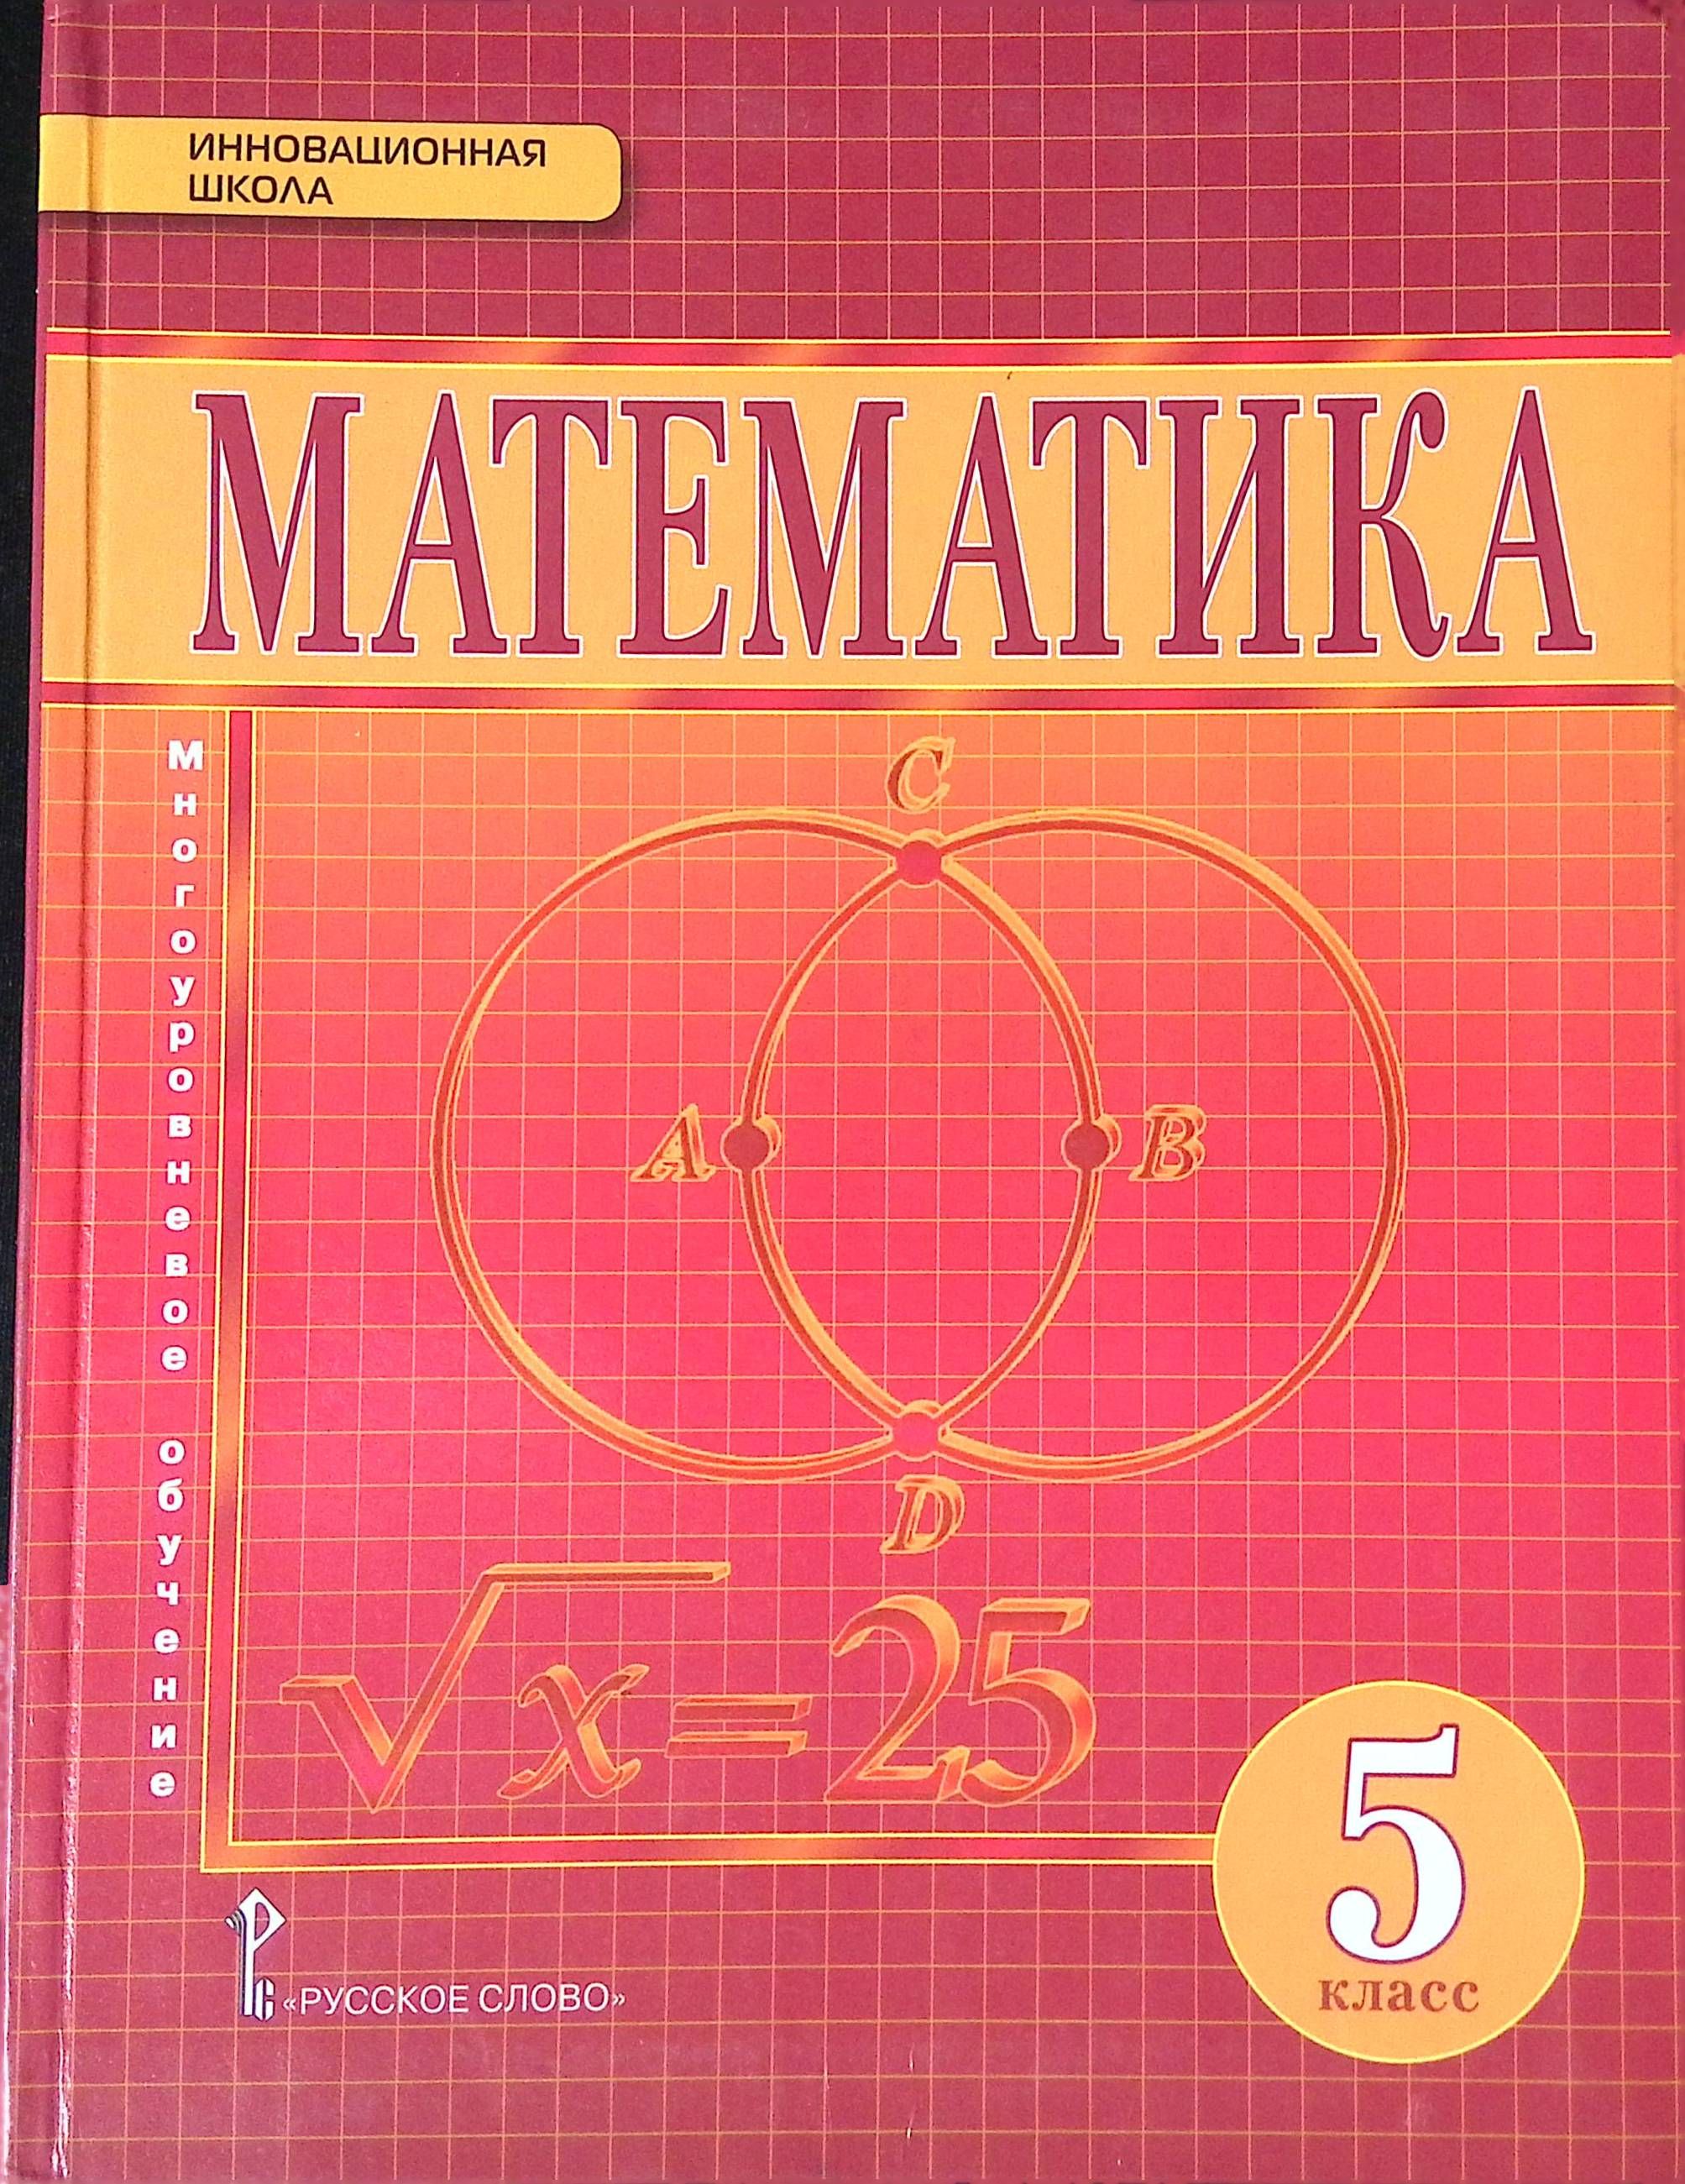 Матиматика учебник. Математика Никитин , Козлов 5 класс. Учебник математики. Учебник математики 6 класс. Математика 6 класс. Учебник.